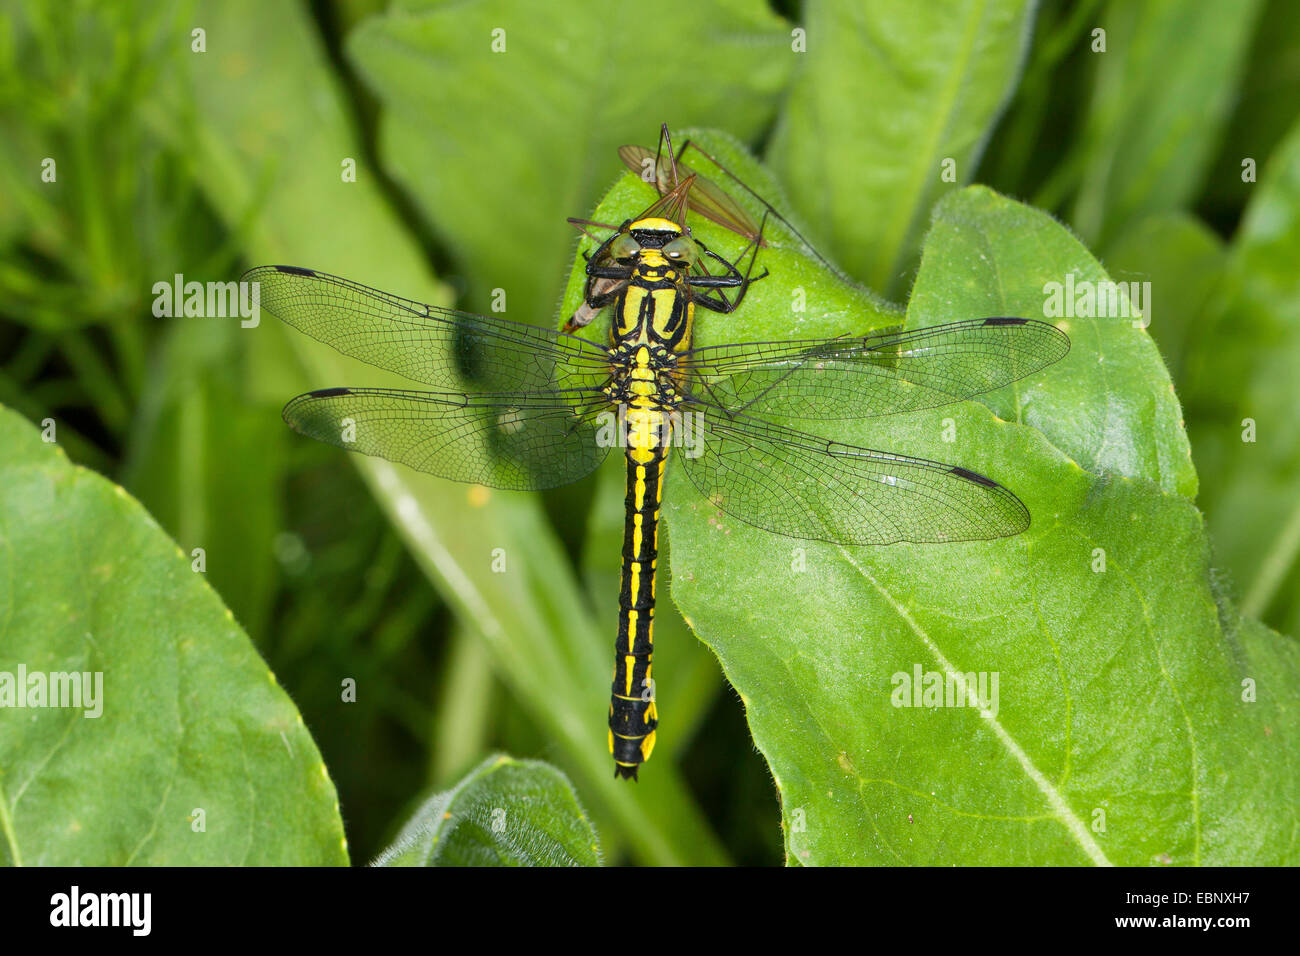 Club-tailed dragonfly (Gomphus vulgatissimus), con presas, Alemania Foto de stock